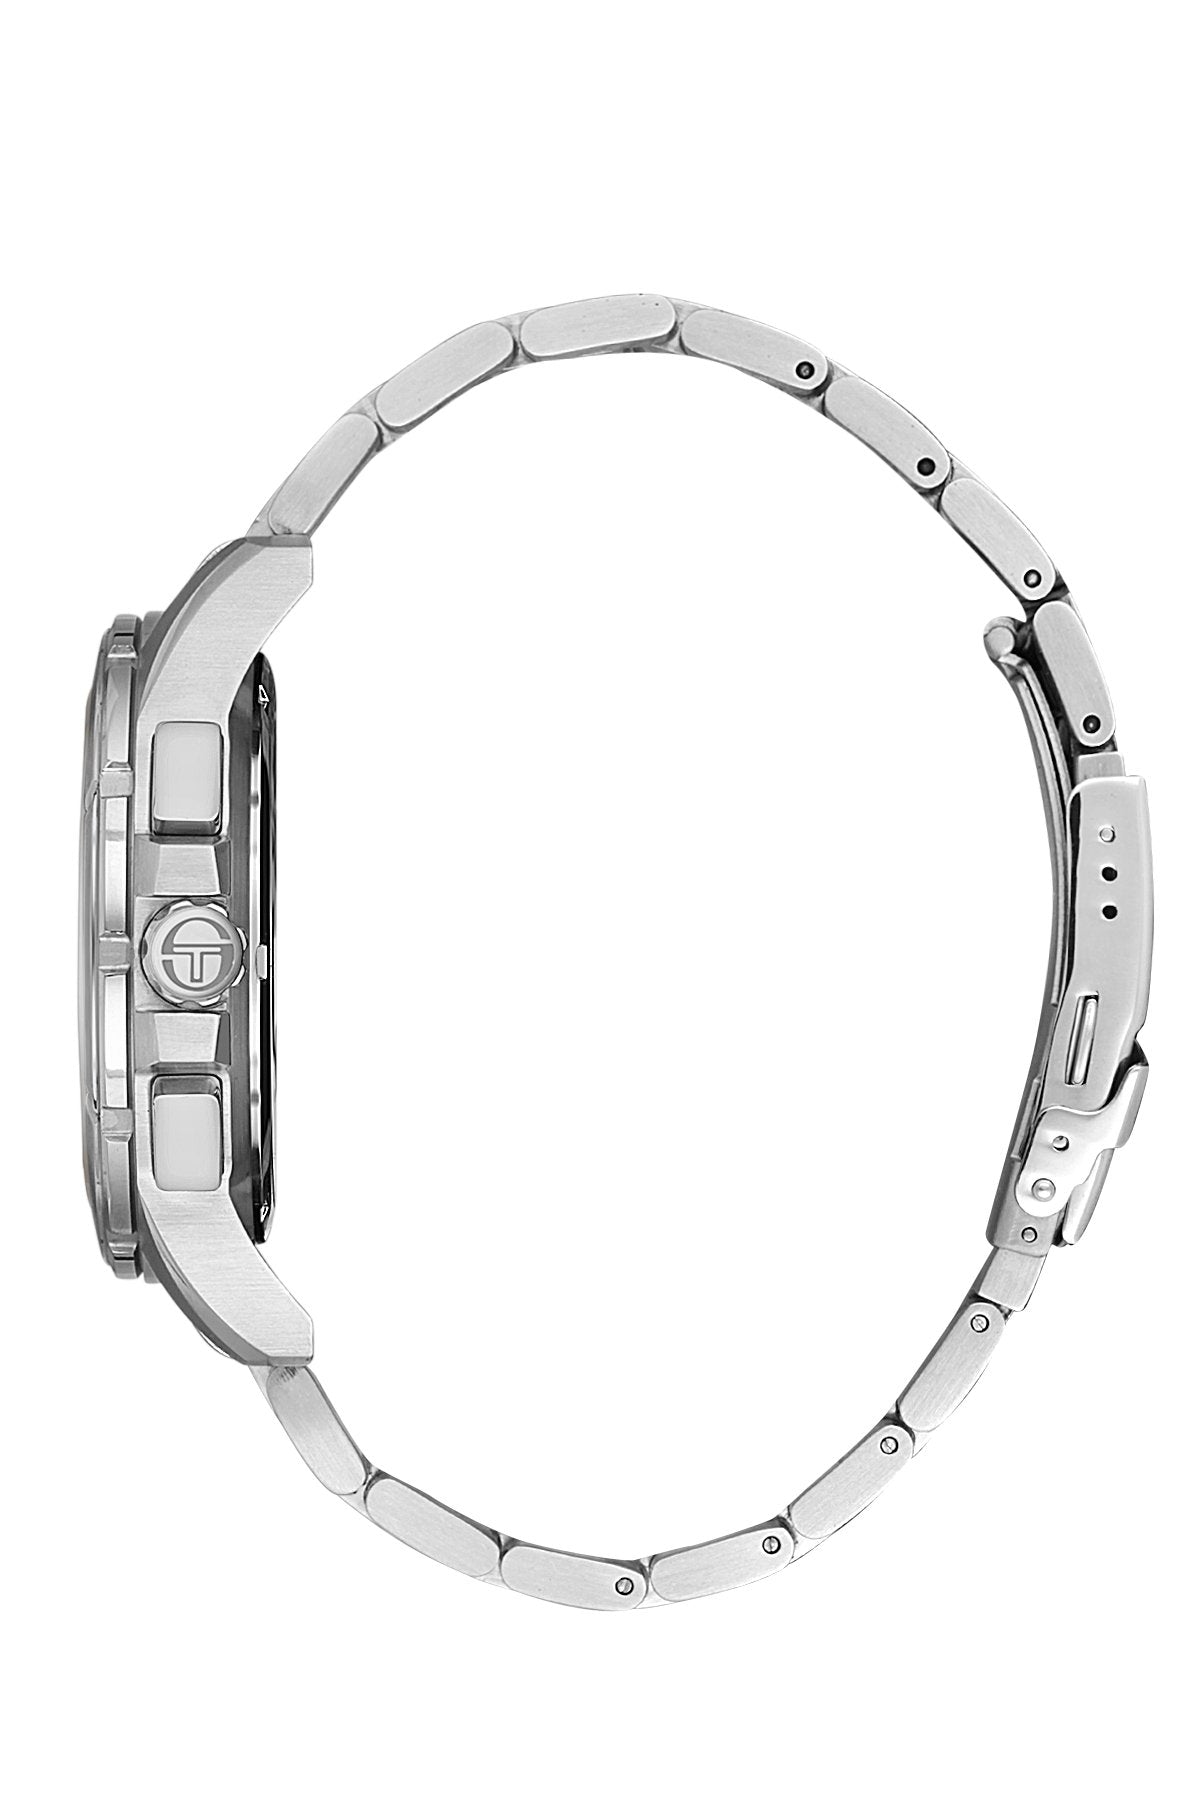 | Sergio Tacchini Men's Watch ST.1.10403-4 - Takreem Fusion | - #sho| Sergio Tacchini Men's Watch ST.1.10403-4 - Takreem Fusion |p_name#| Sergio Tacchini Men's Watch ST.1.10403-4 - Takreem Fusion |WatchSergio TacchiniTakreem.joST.1.10403-48682308152852SilverStainless SteelMen| Sergio Tacchini Men's Watch ST.1.10403-4 - Takreem Fusion |